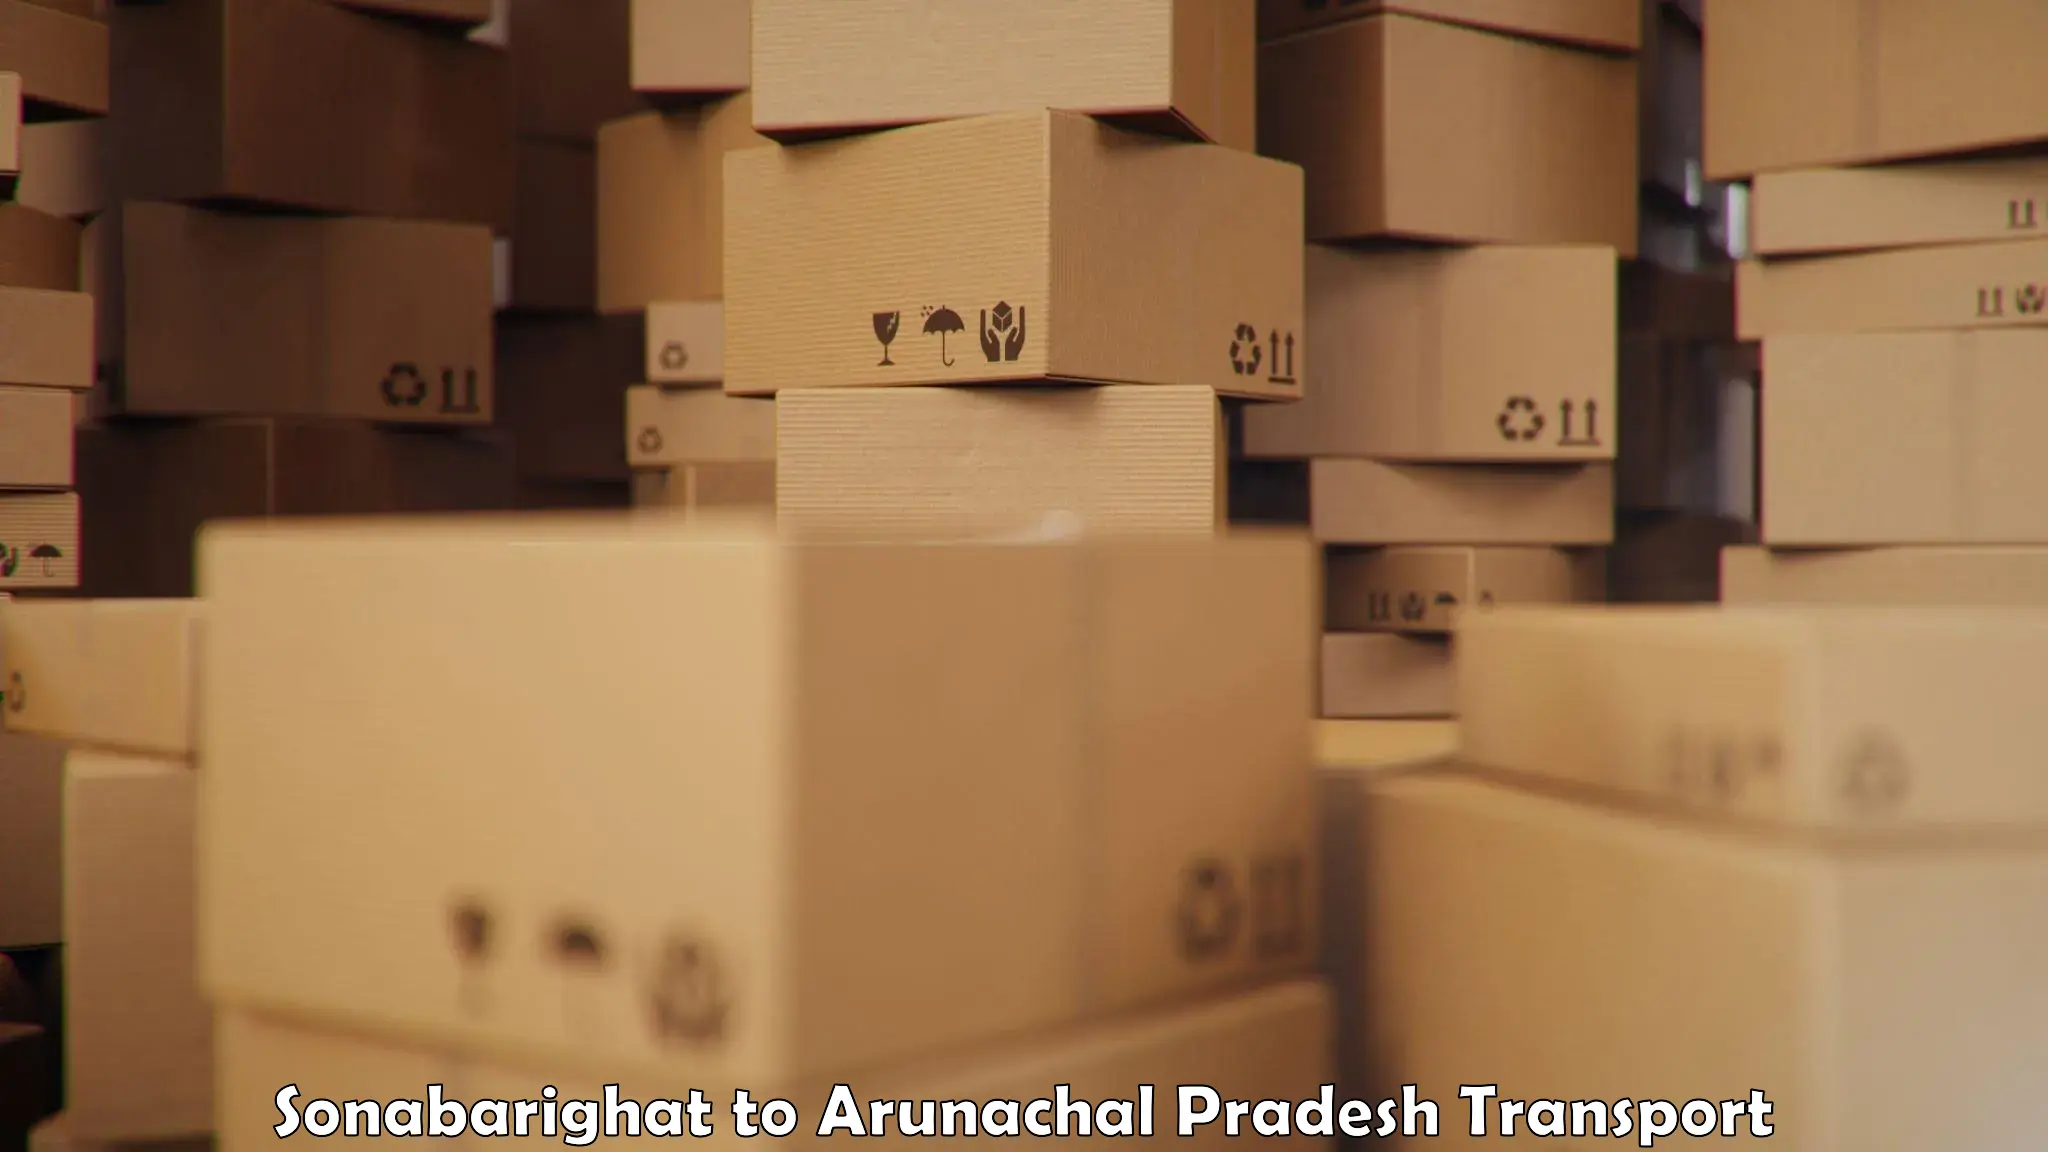 International cargo transportation services Sonabarighat to Arunachal Pradesh